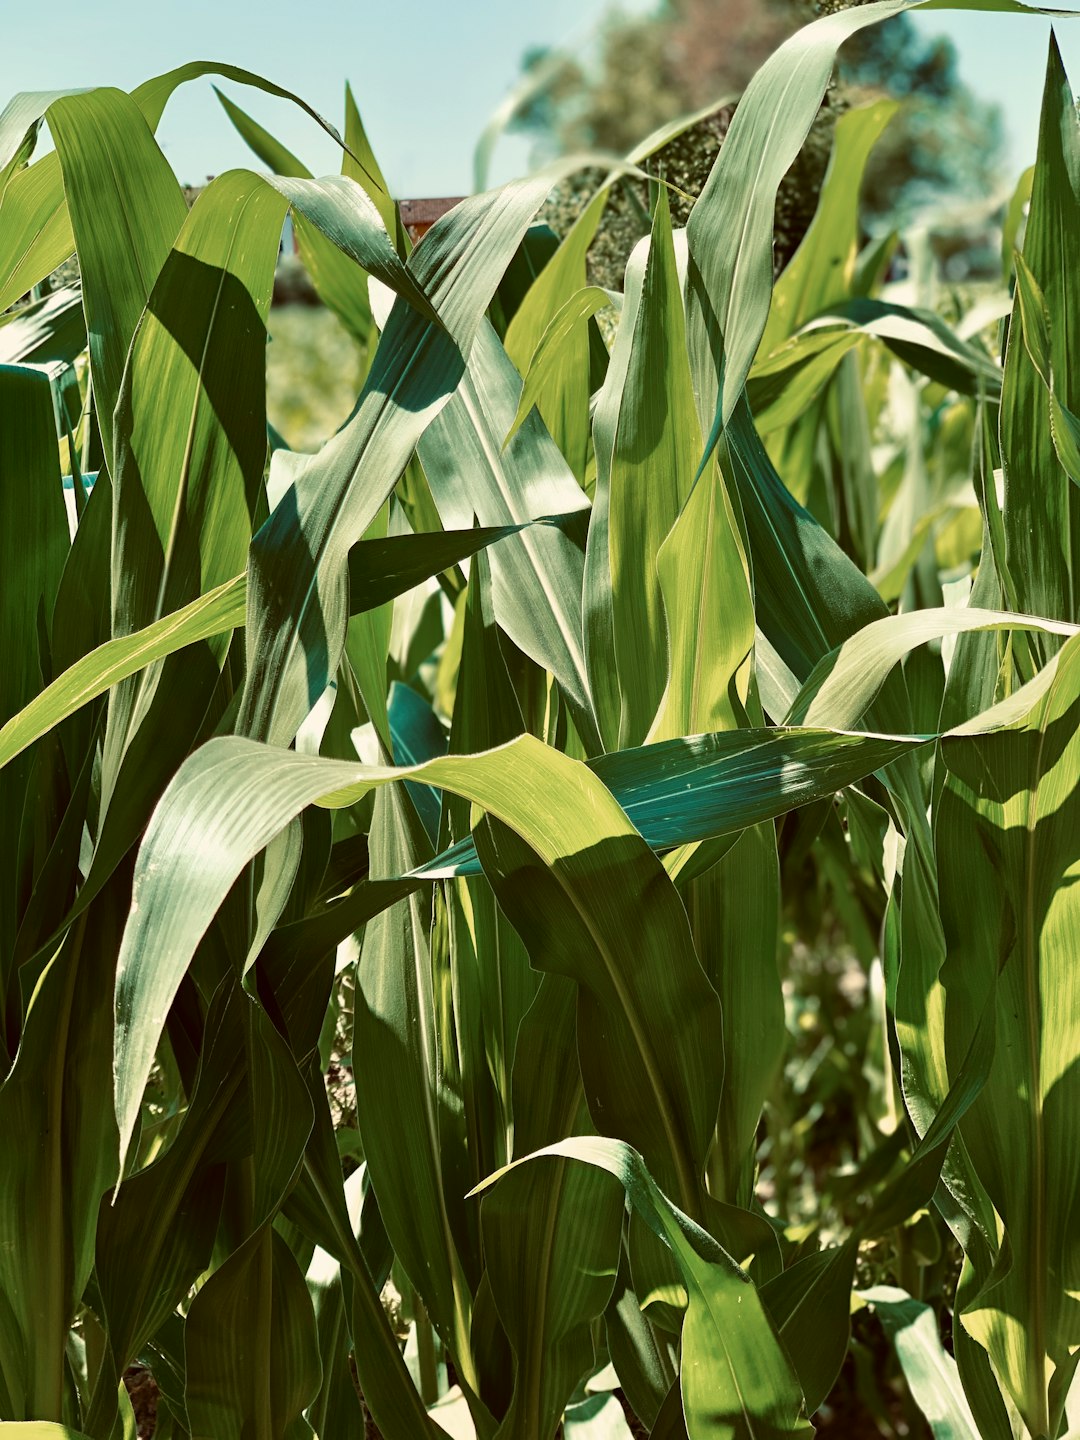 feijoa, soil, green corn plant during daytime